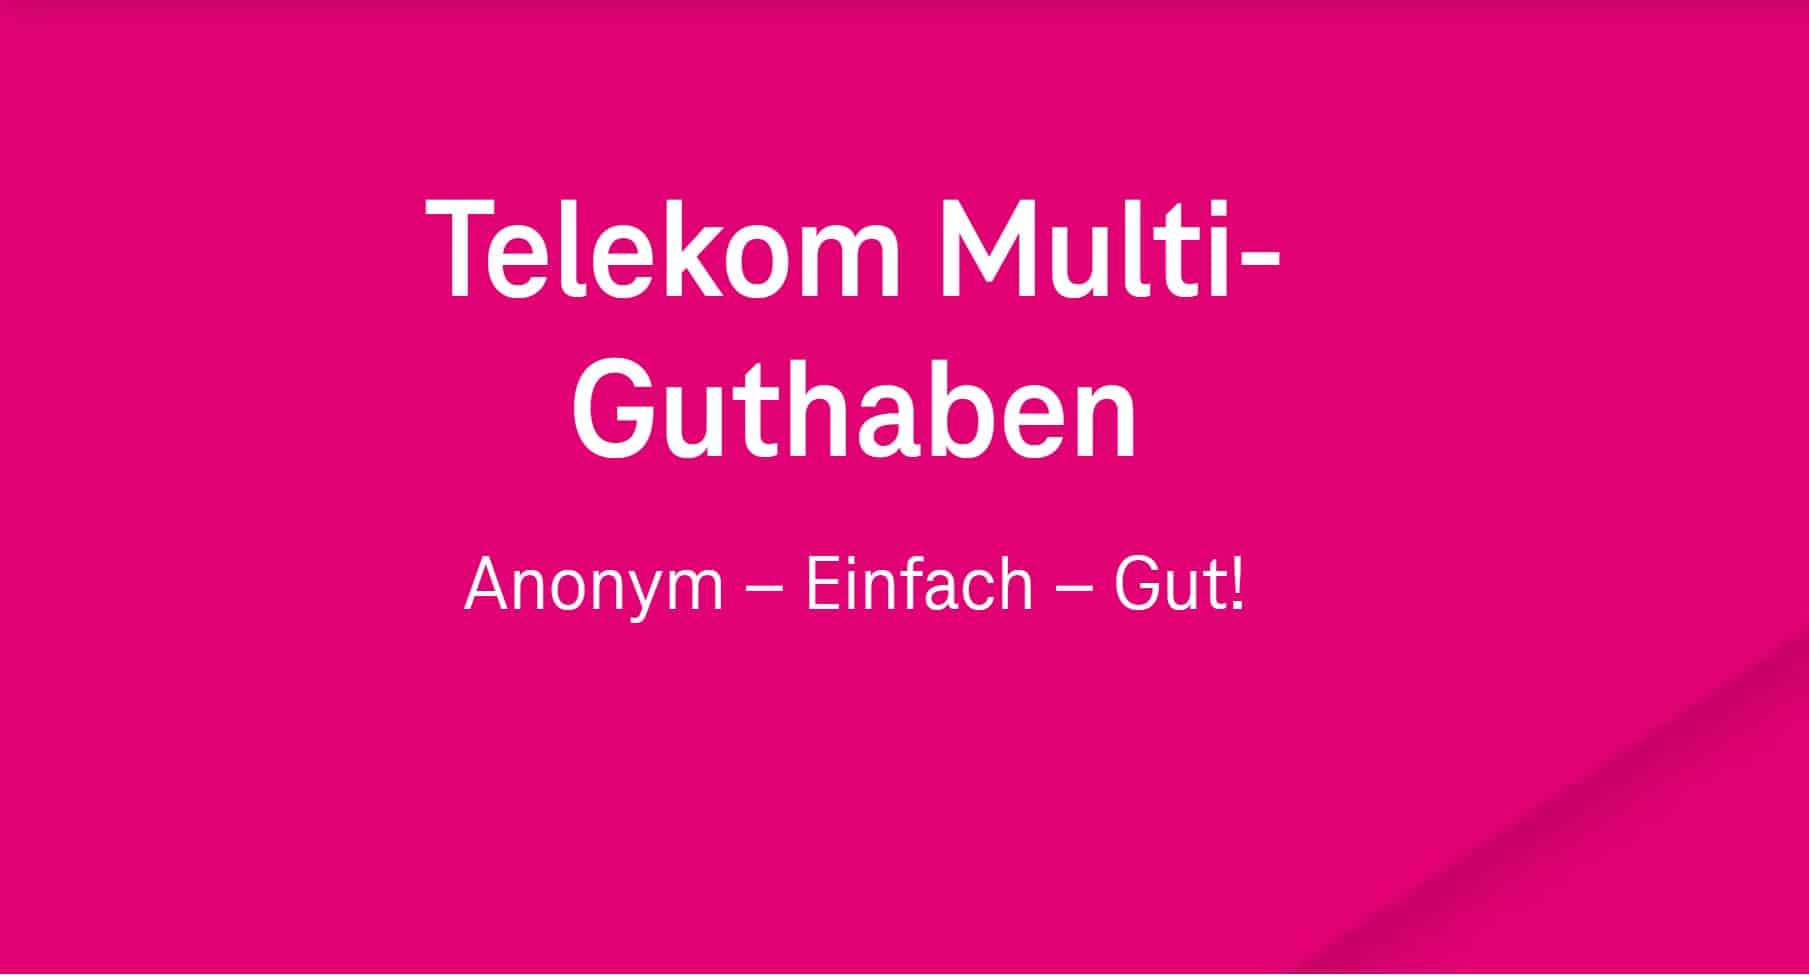 Telekom Guthabenkarte Das anonyme die kann Multi-Guthaben: